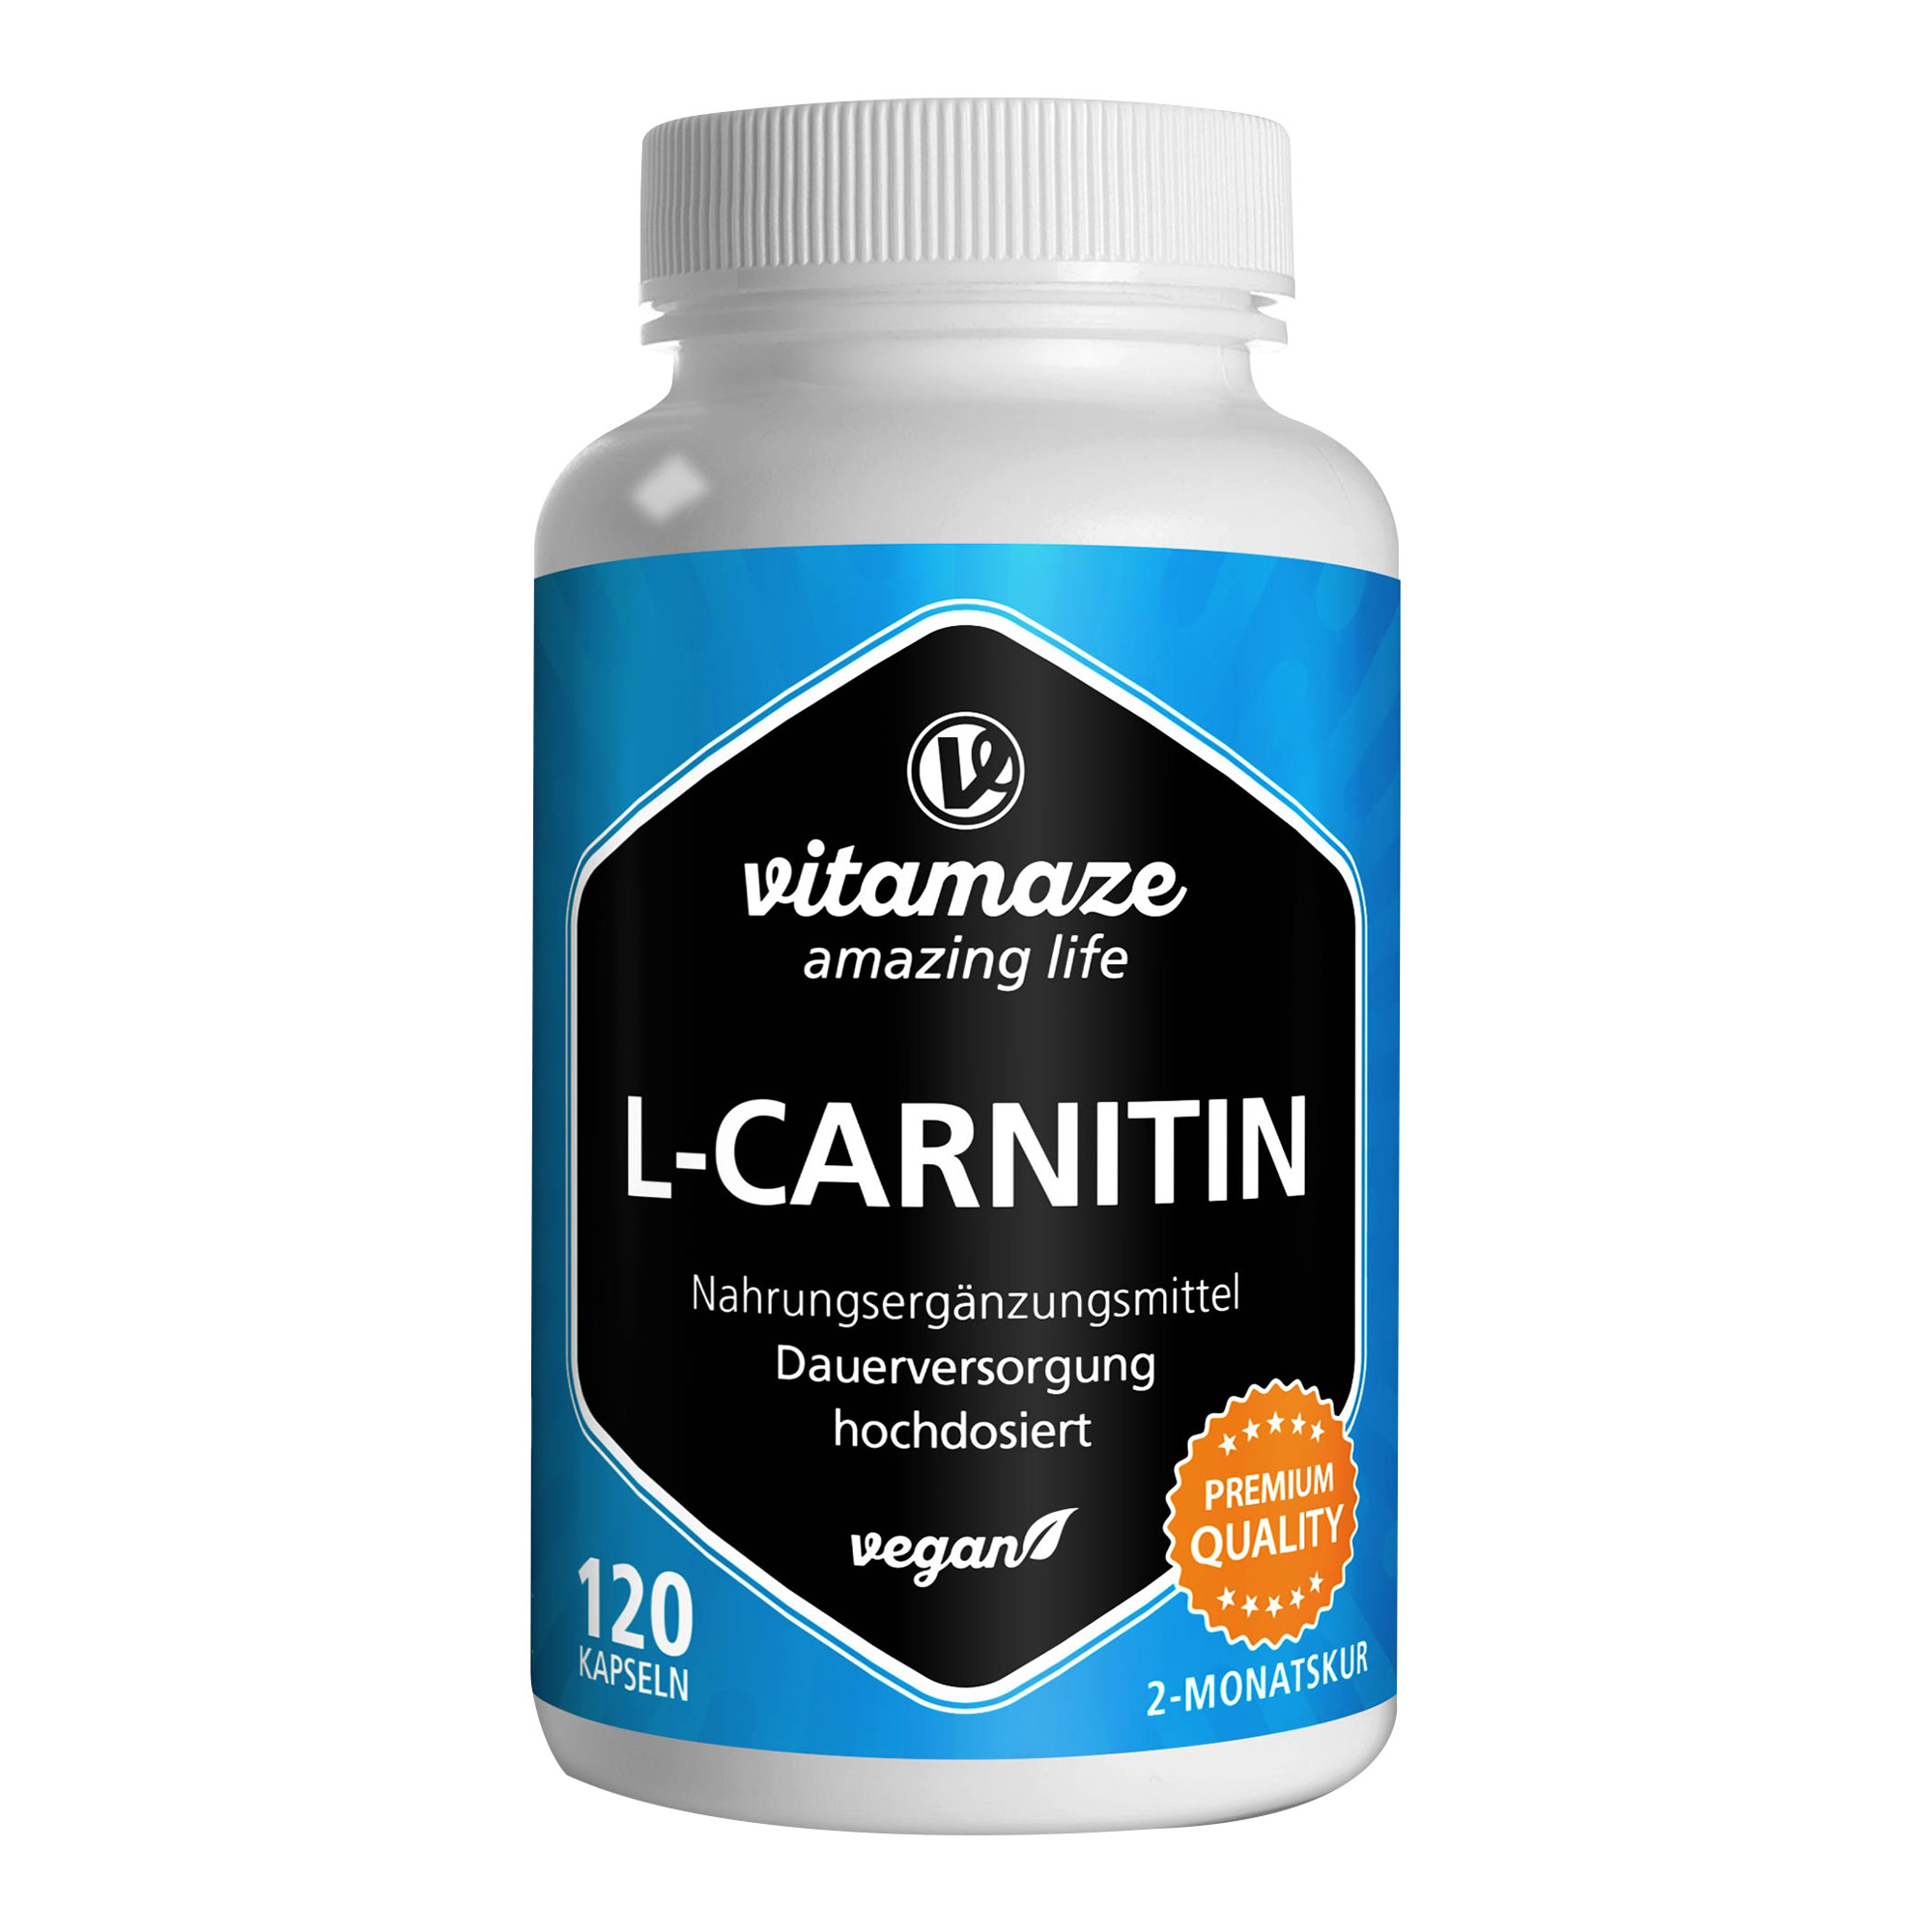 Nahrungsergänzungsmittel mit hochdosiertem L-Carnitin.